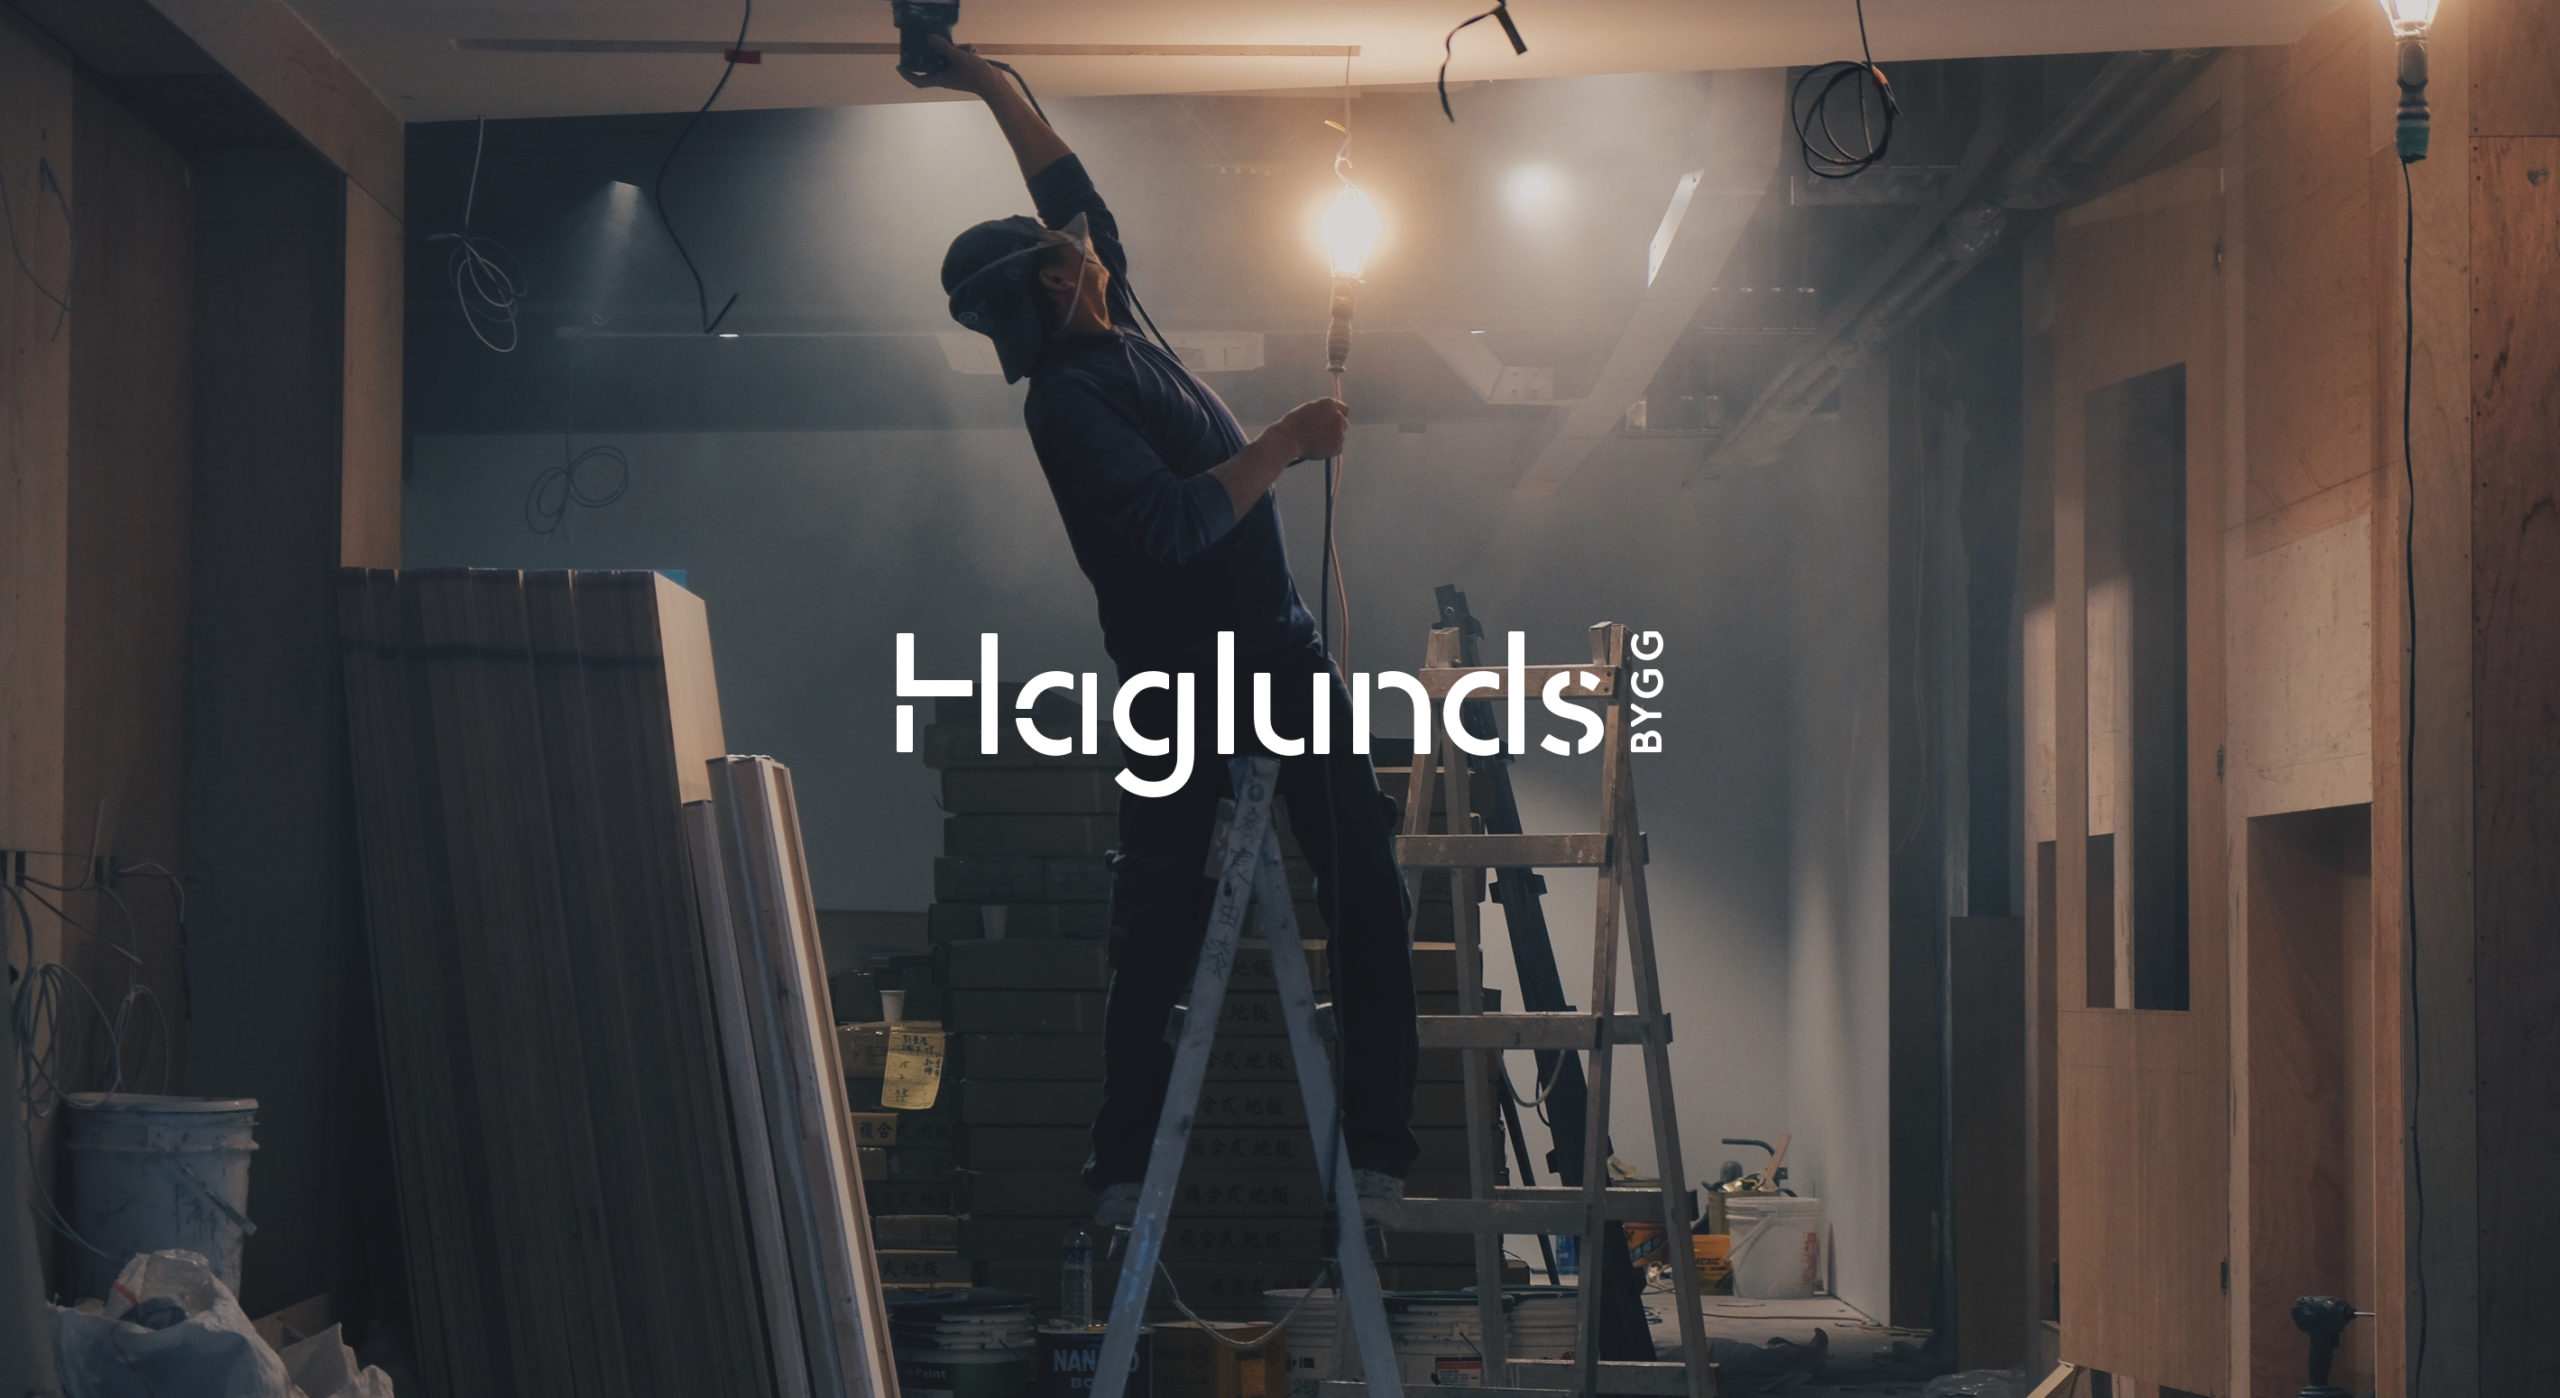 Haglunds_1ST-L1